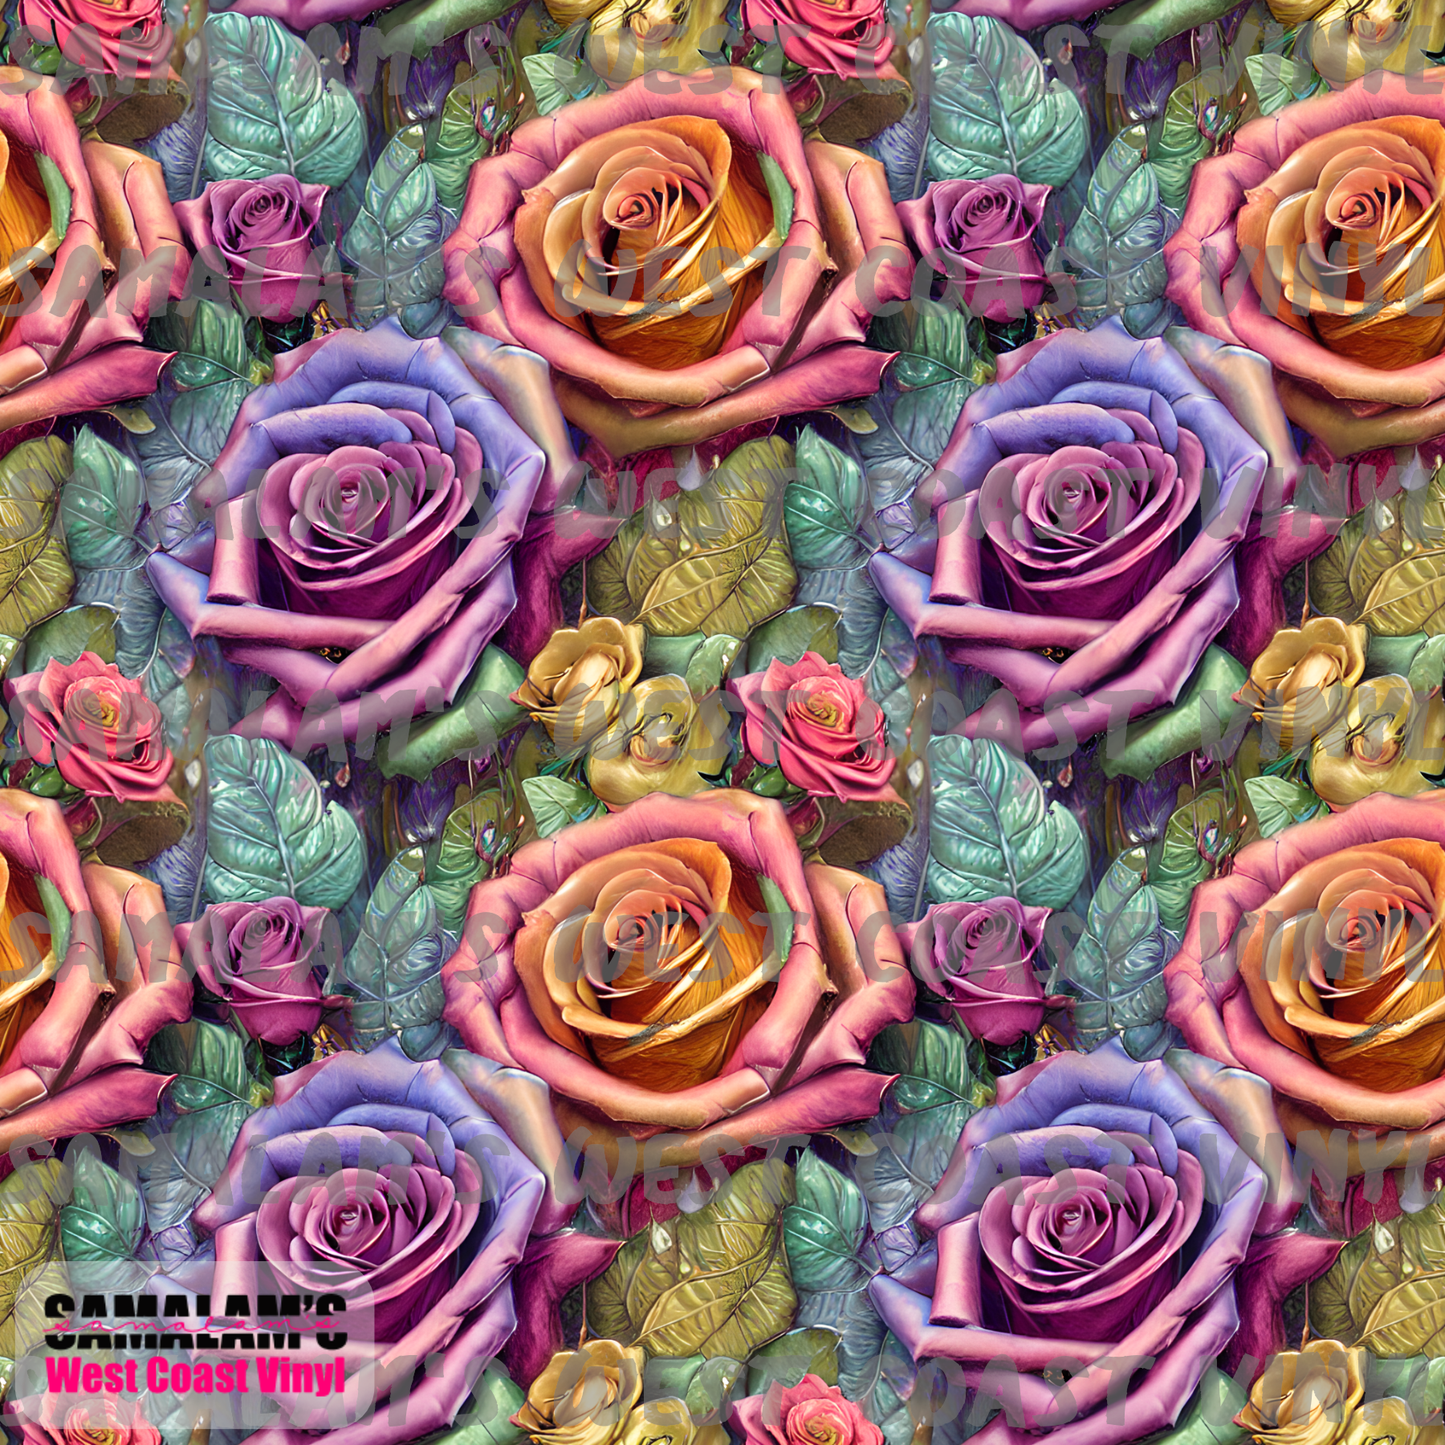 Pearled Rainbow Roses (Seamless)